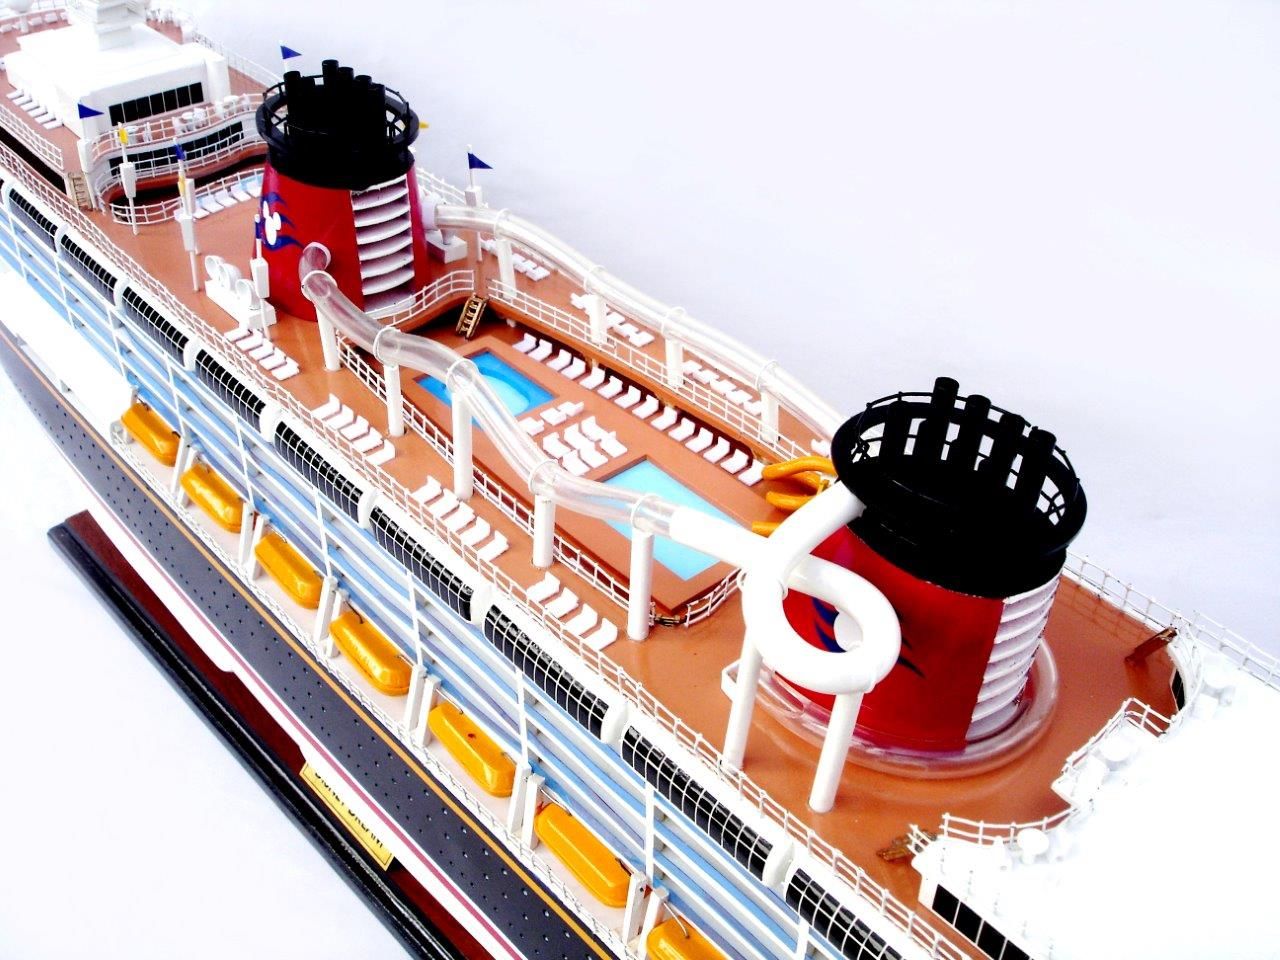 Disney Dream - Maquette de bateau - GN